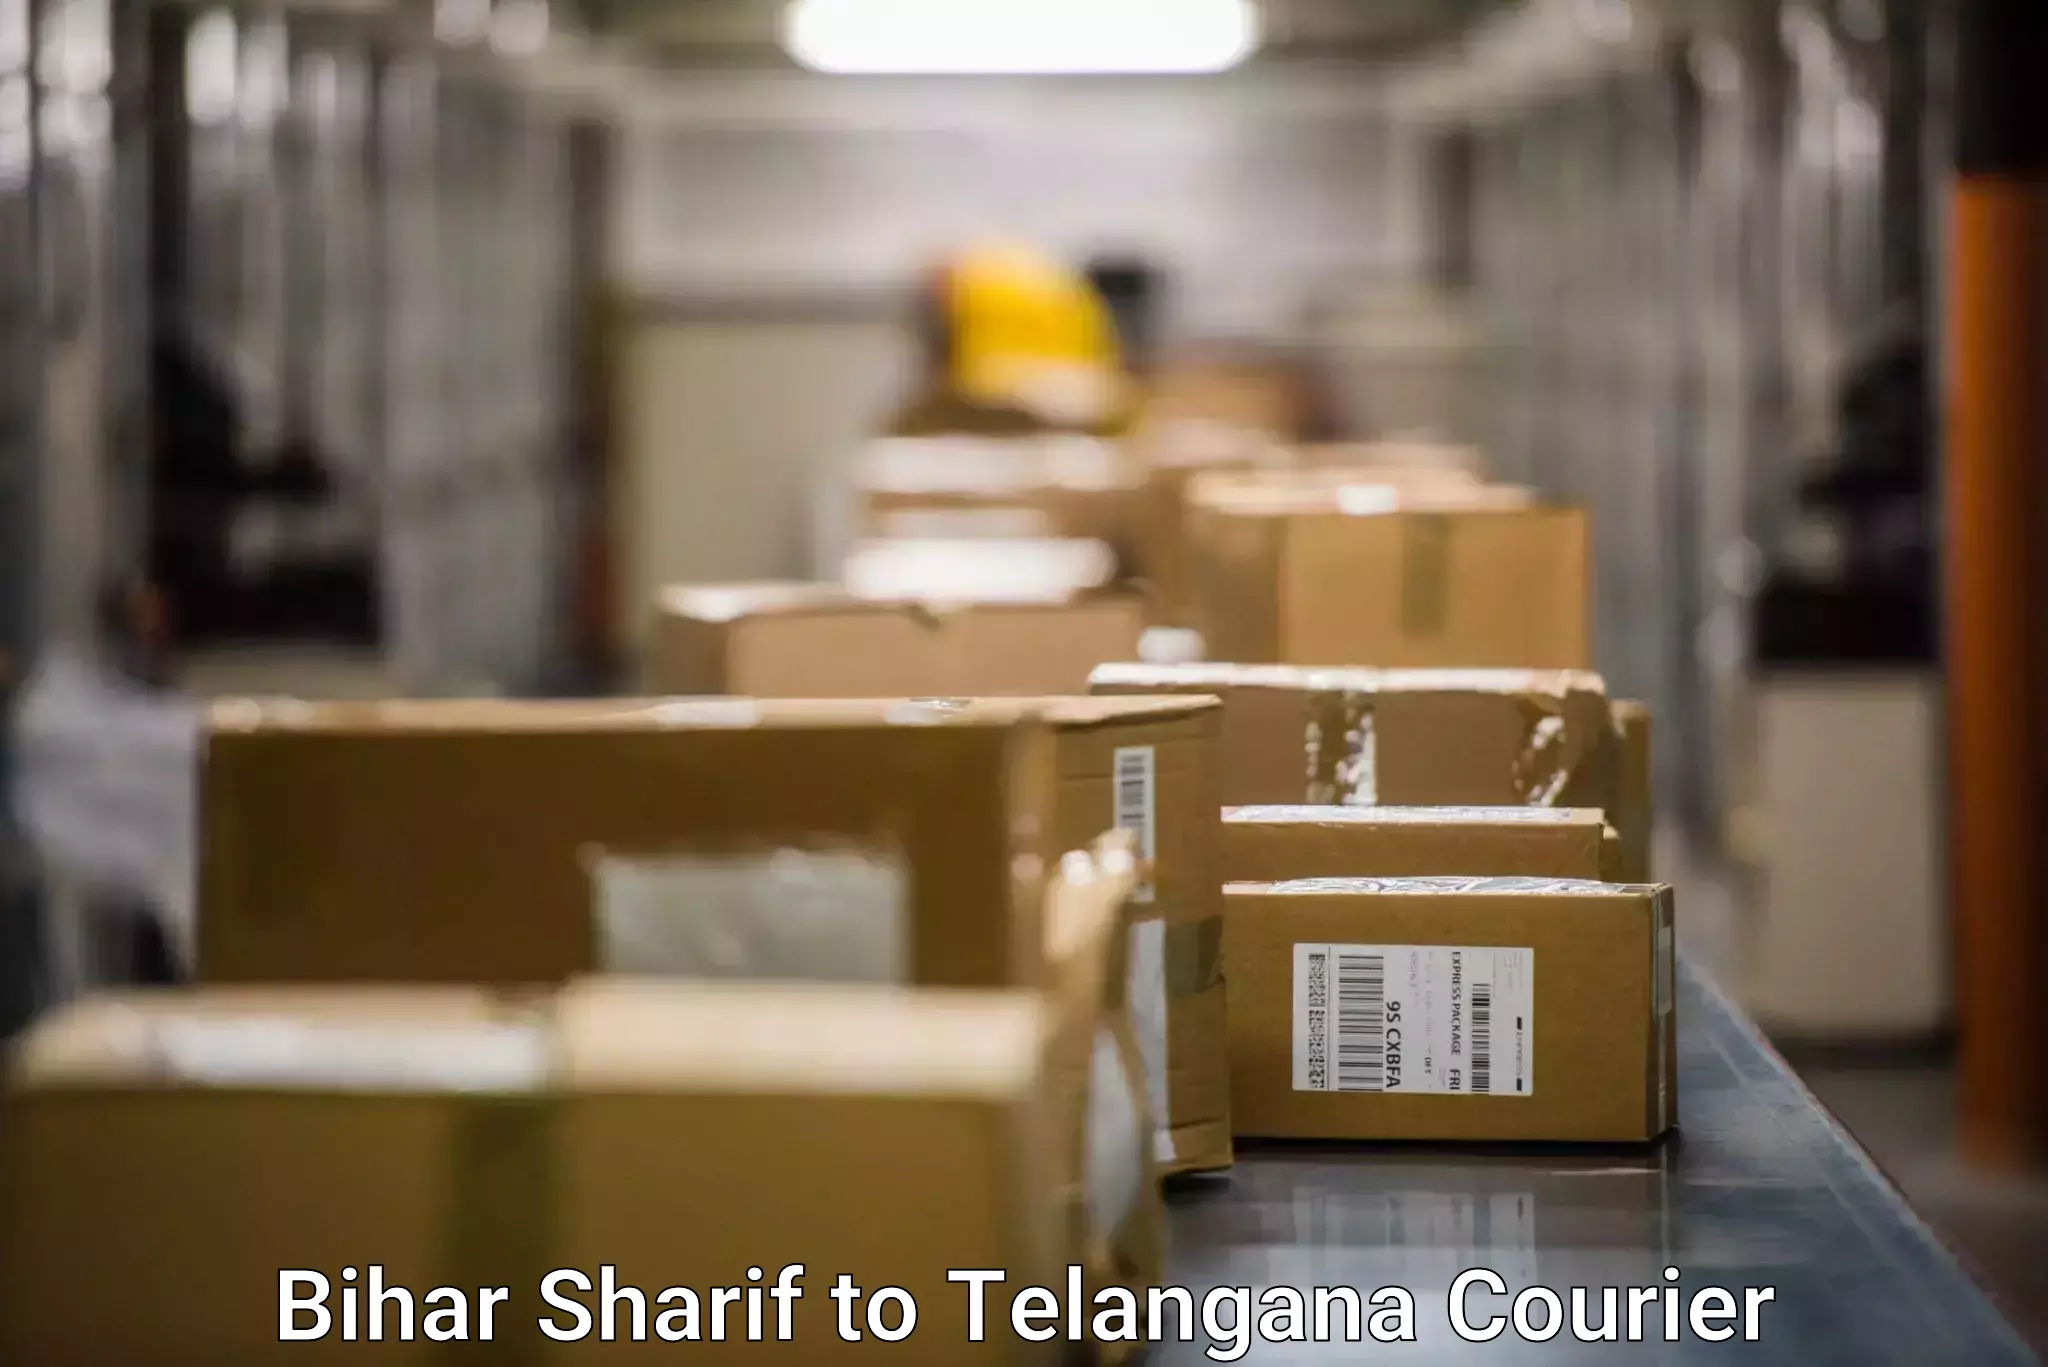 Customer-centric shipping Bihar Sharif to Balanagar